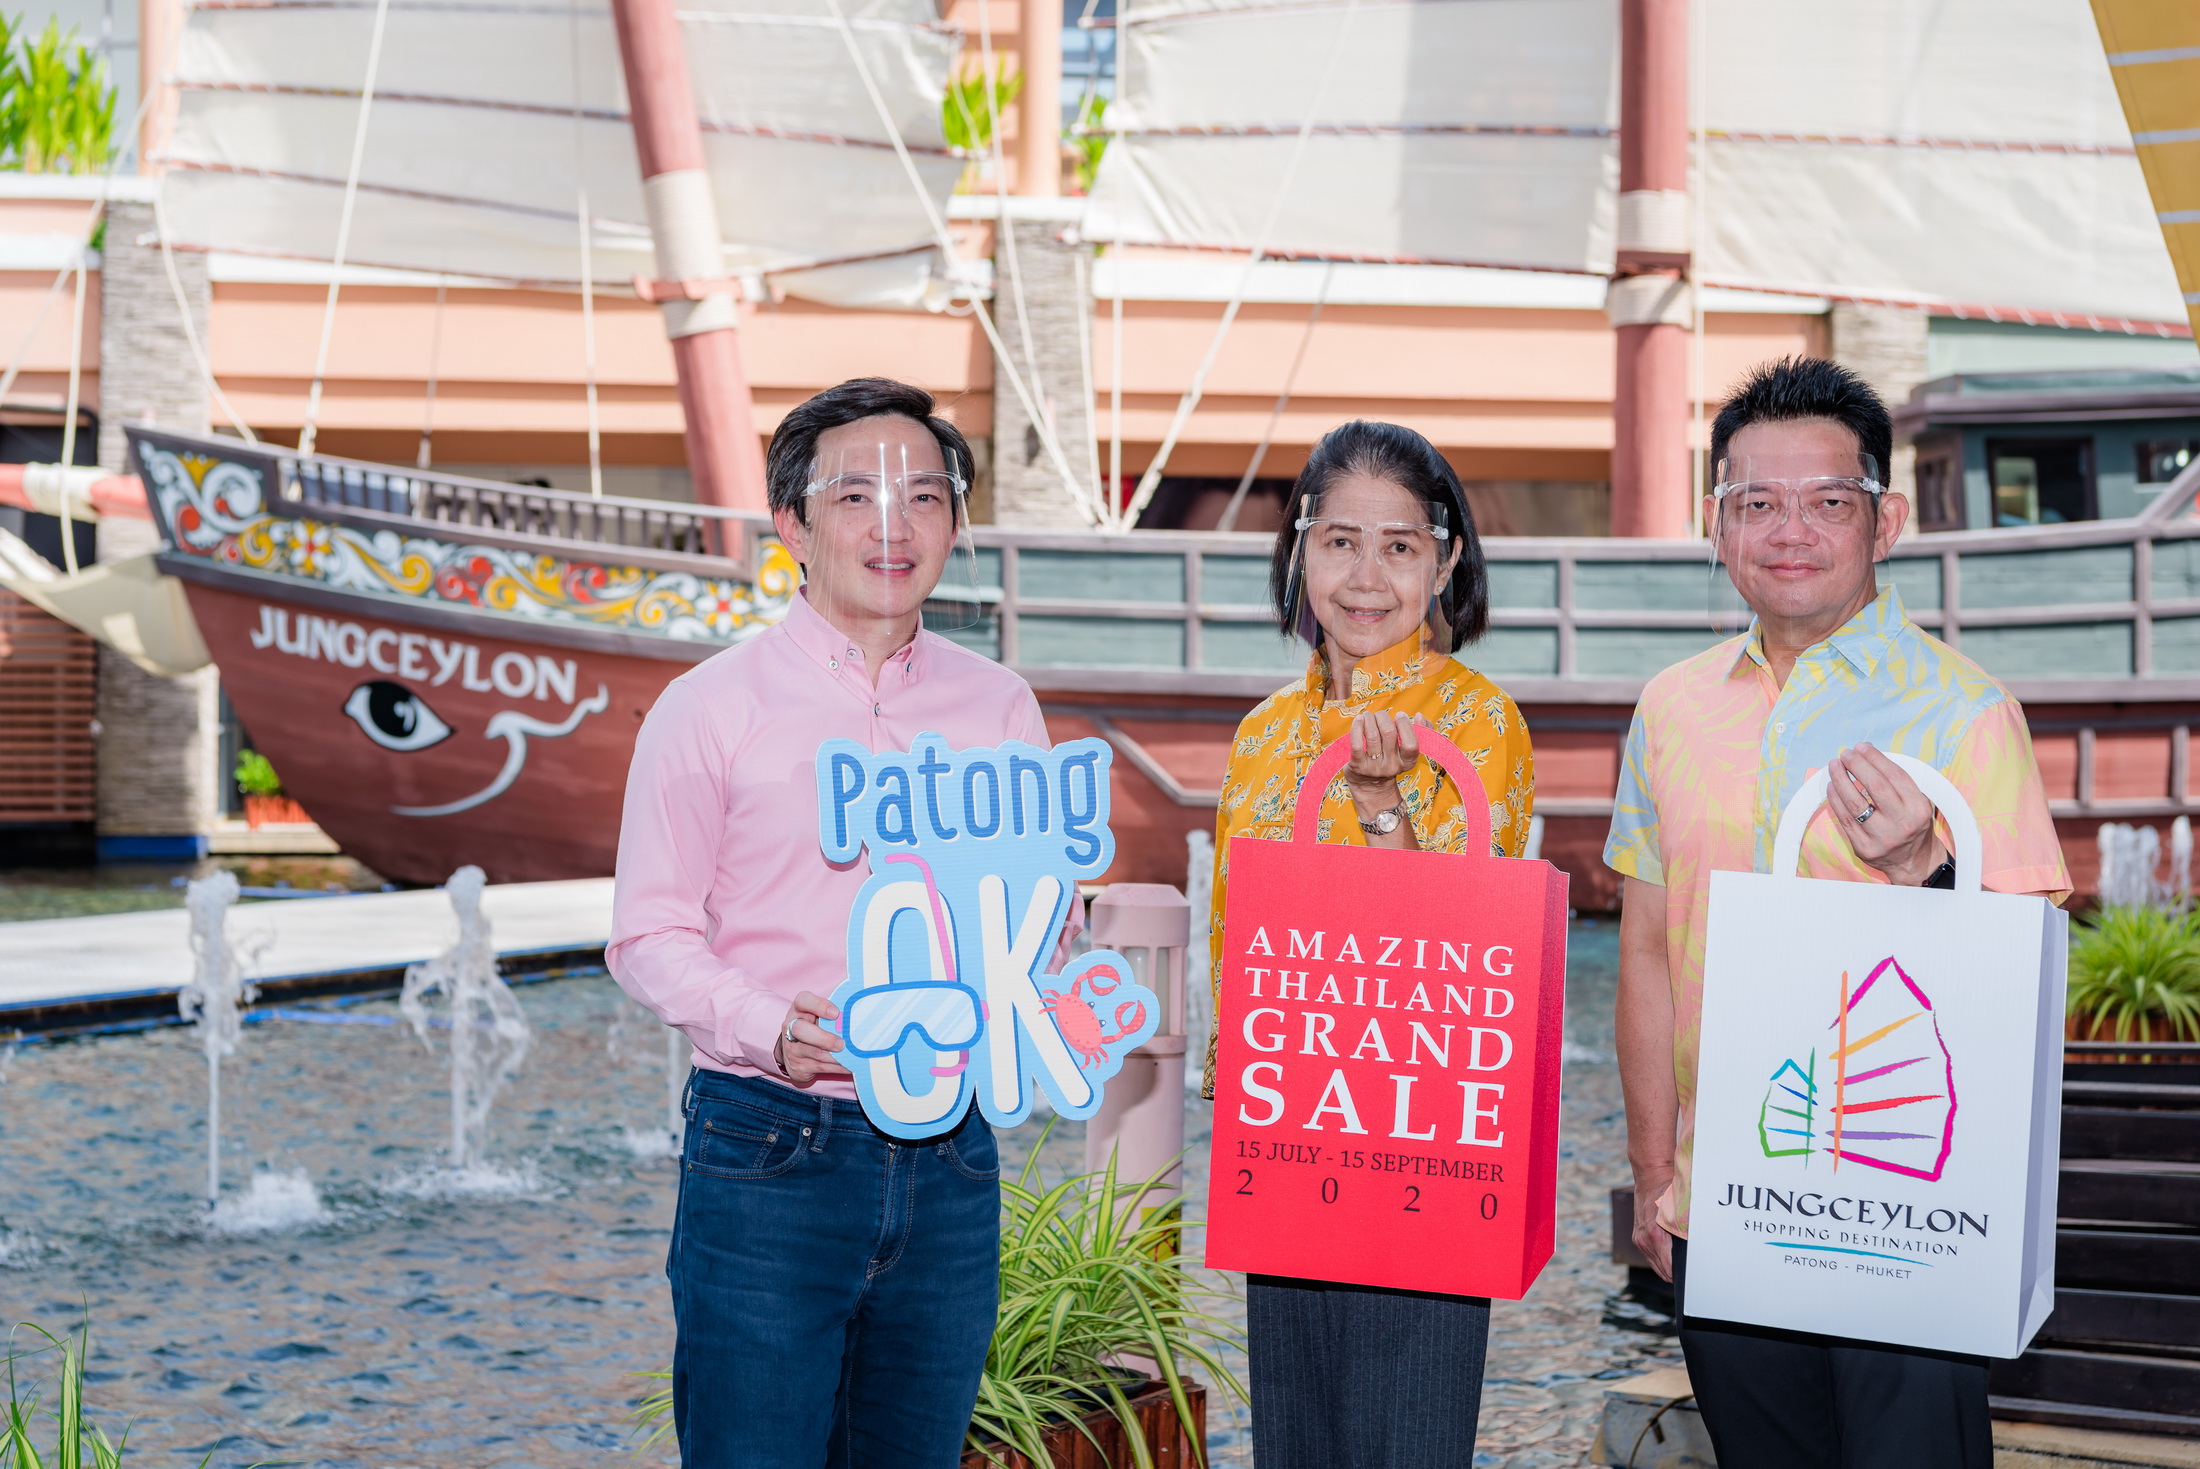 จังซีลอน ป่าตอง ร่วมกับ ททท. สนับสนุนโครงการ “Amazing Thailand Grand Sale 2020” 